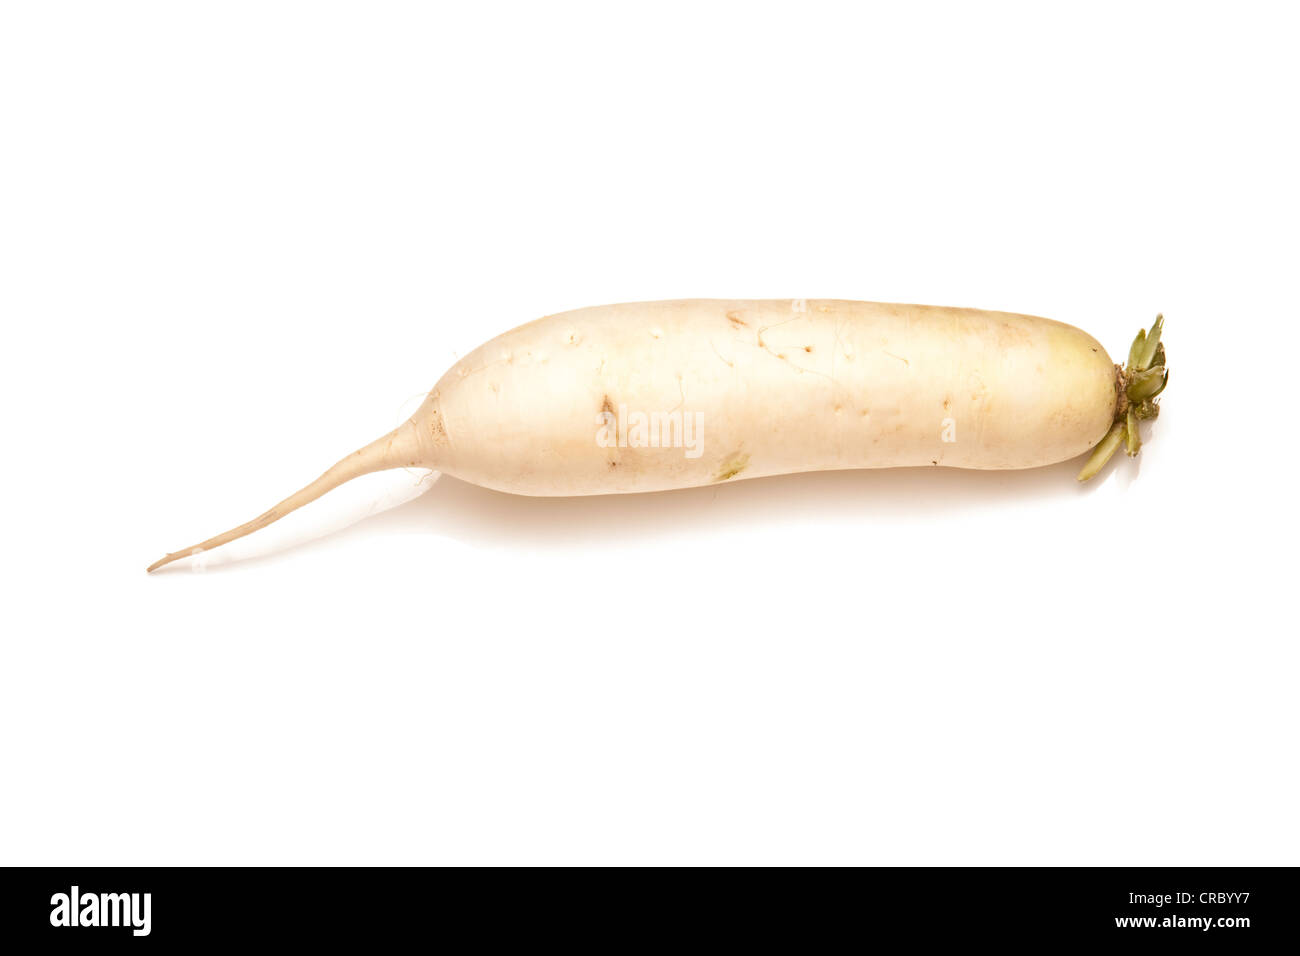 Mooli radish or Daikon isolated on a white studio background Stock Photo